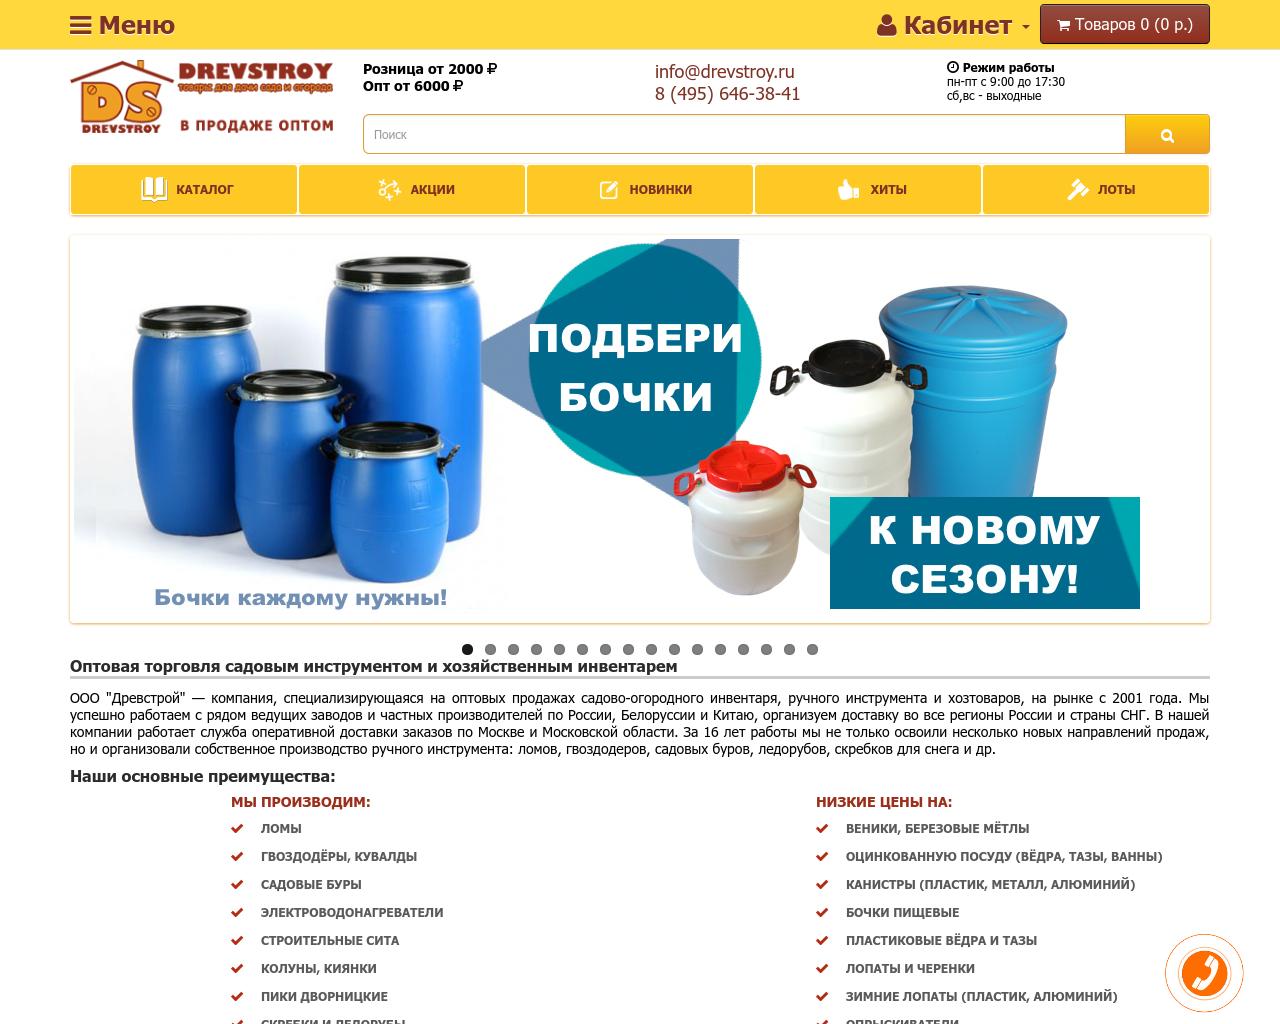 Изображение сайта drevstroy.ru в разрешении 1280x1024